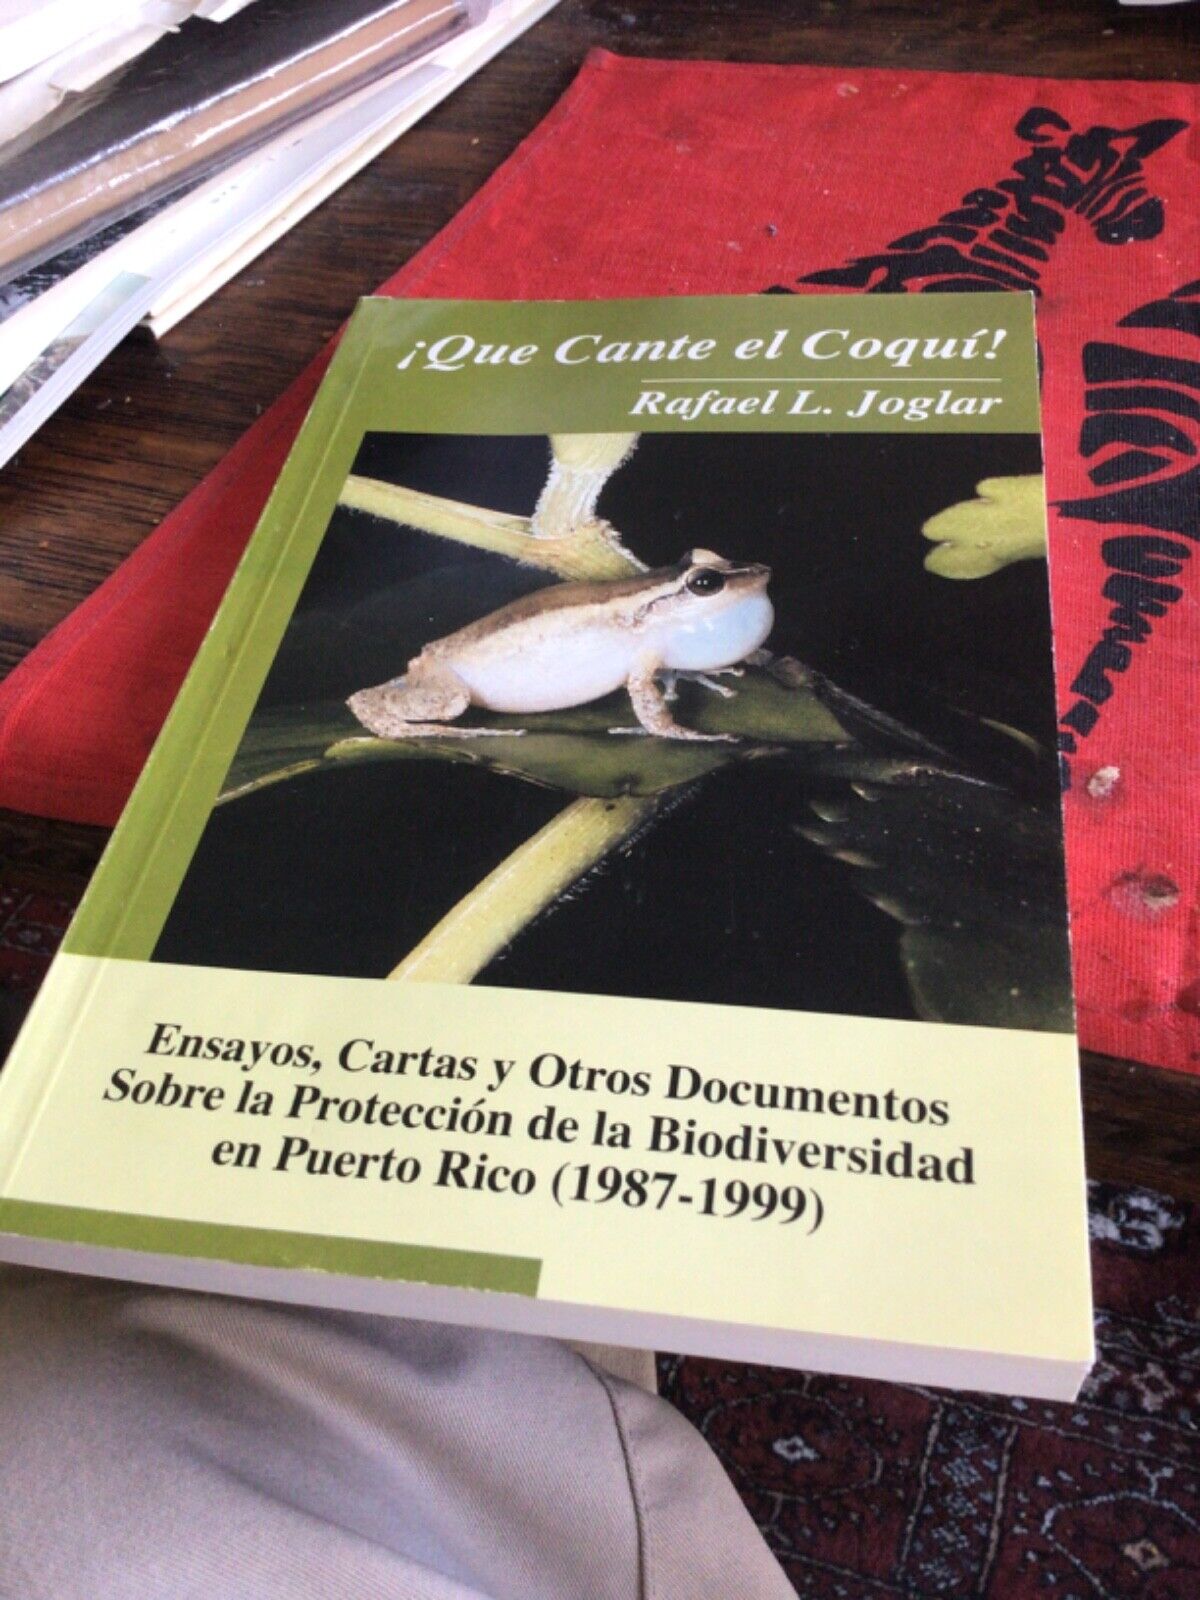 Biodiversity in Puerto Rico, Rafael Joglar Signed Compendium